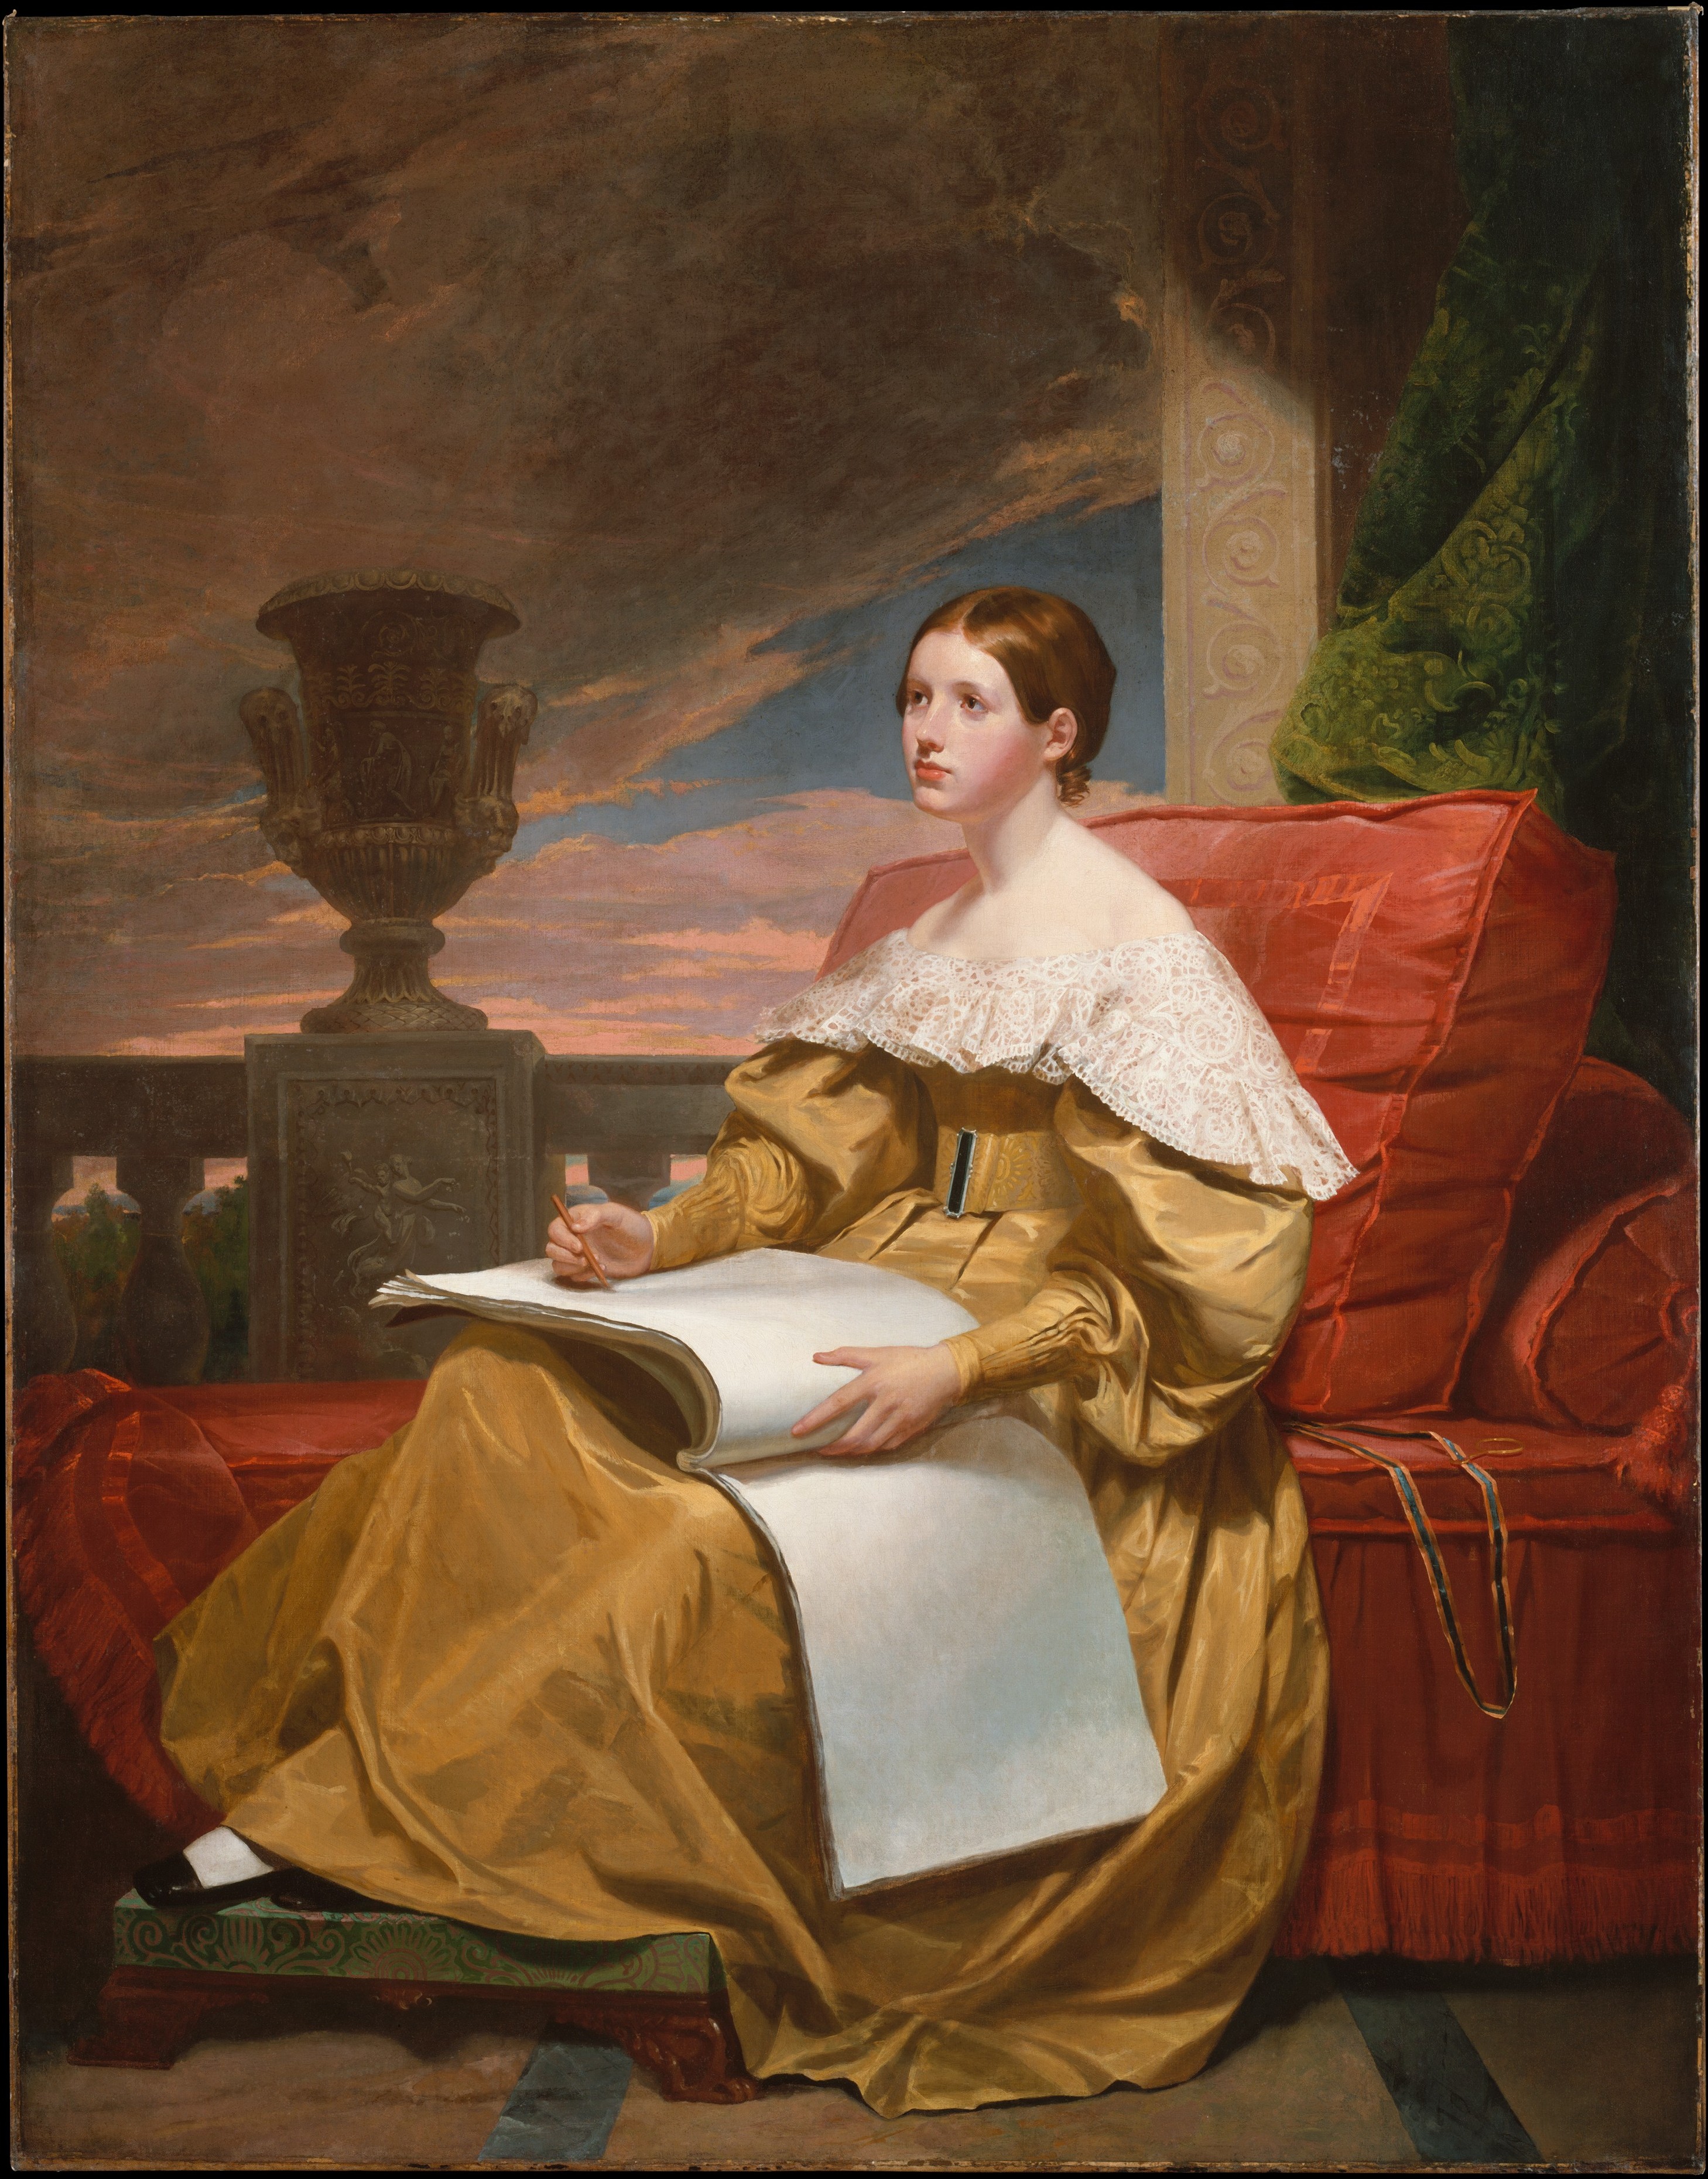 Susan Walker Morse (La musa) by Samuel F. B. Morse - c. 1836-37 - 187.3 x 146.4 cm 